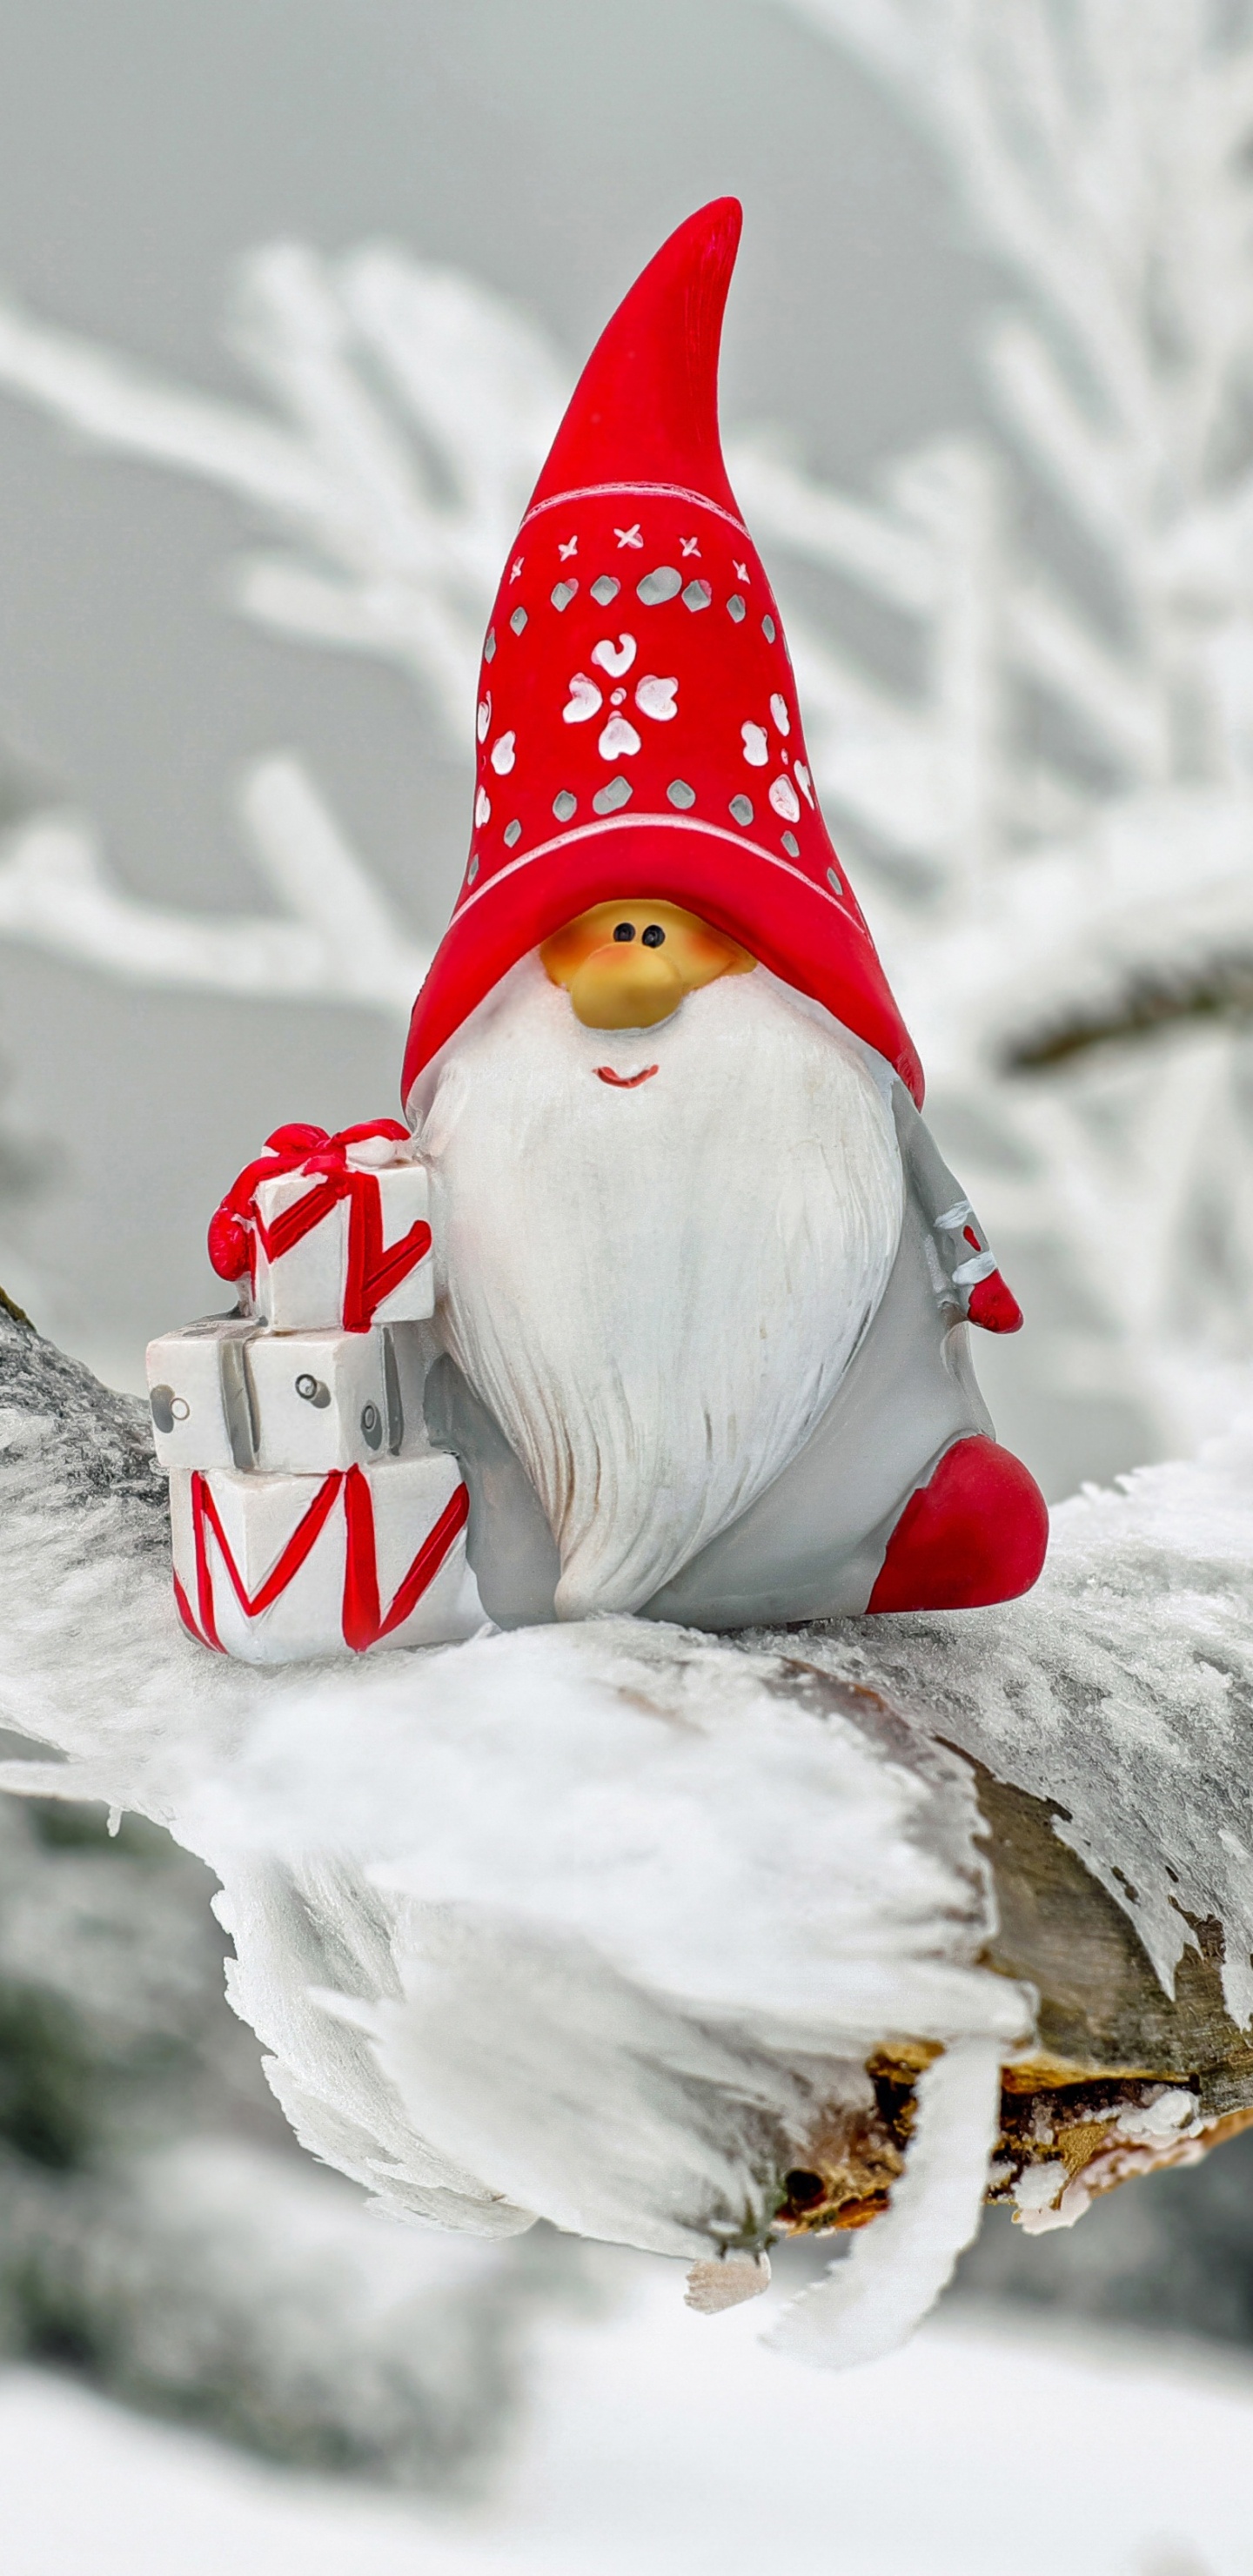 Weihnachtsmann, Weihnachten, Winter, Schnee, Einfrieren. Wallpaper in 1440x2960 Resolution